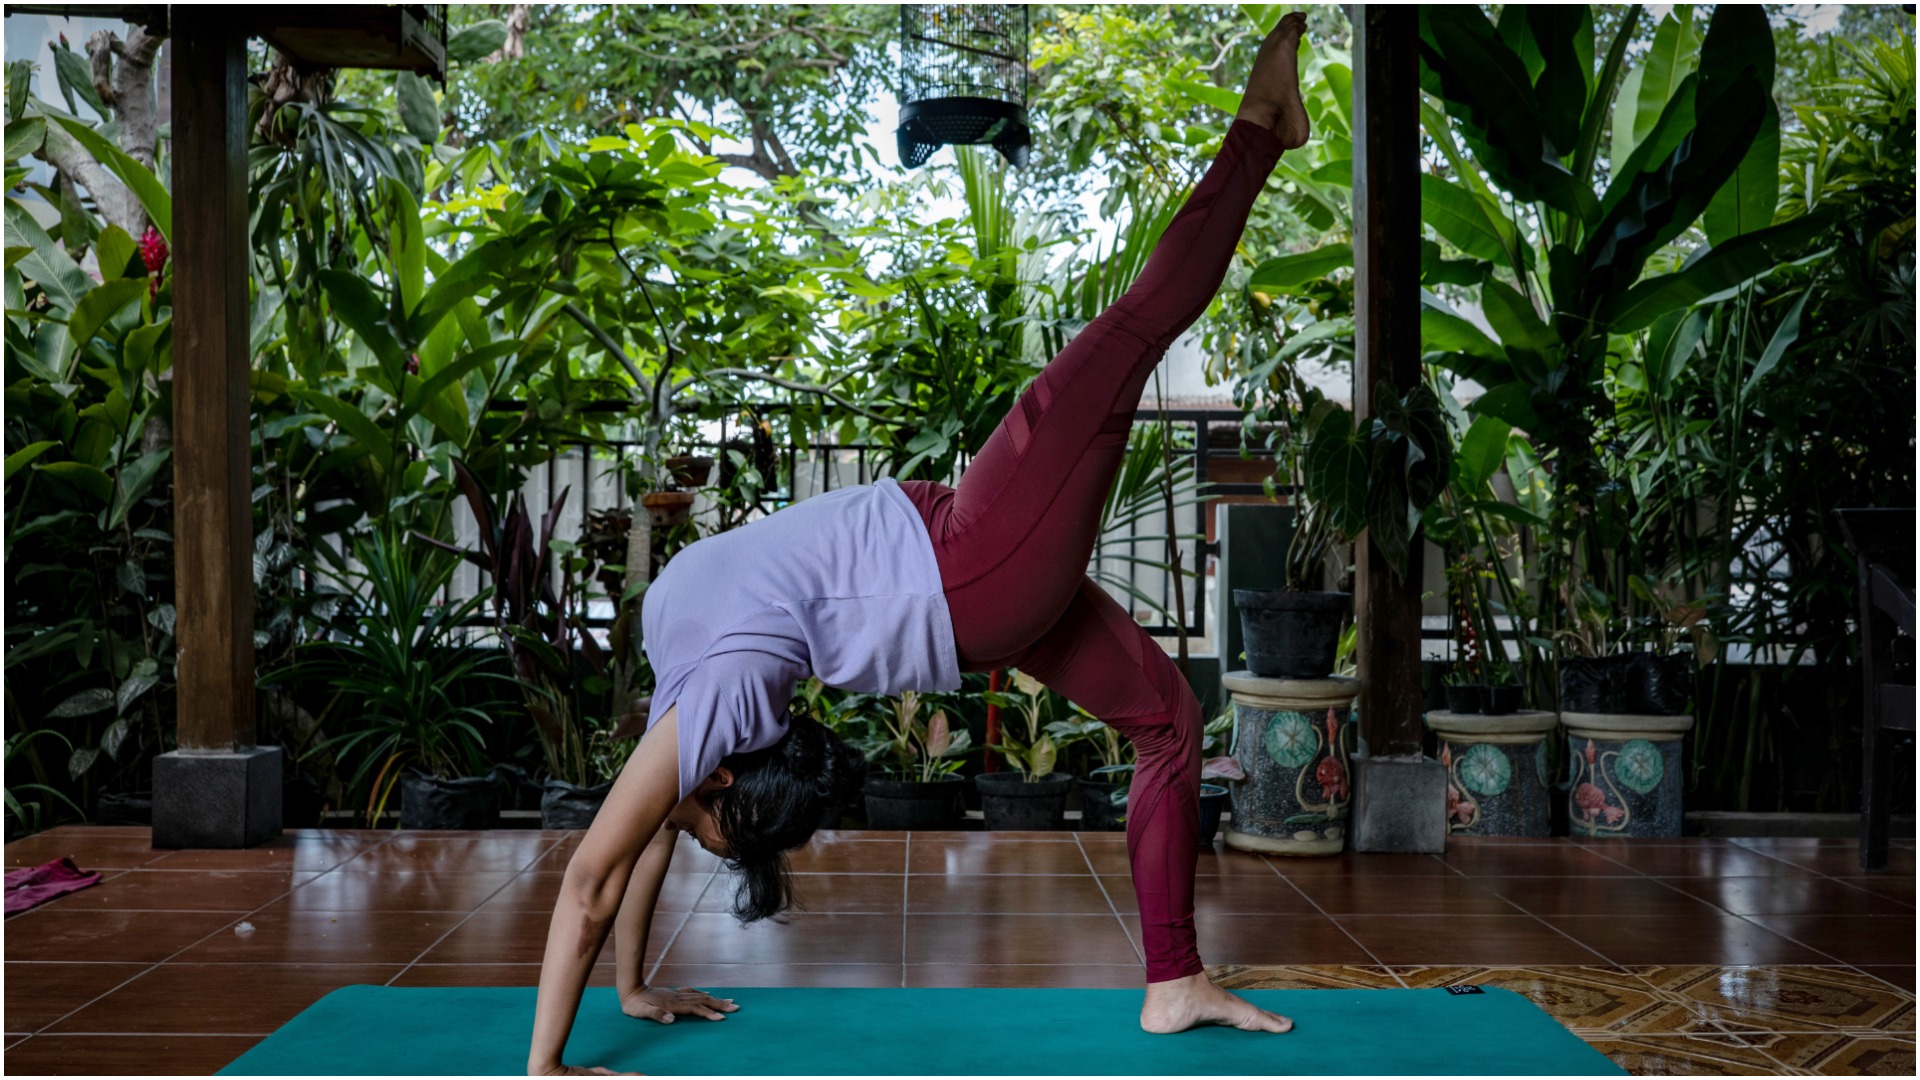 Imagen: El Día Internacional del Yoga será diferente este año por el Covid-19, 21 de junio de 2020 (Getty images)